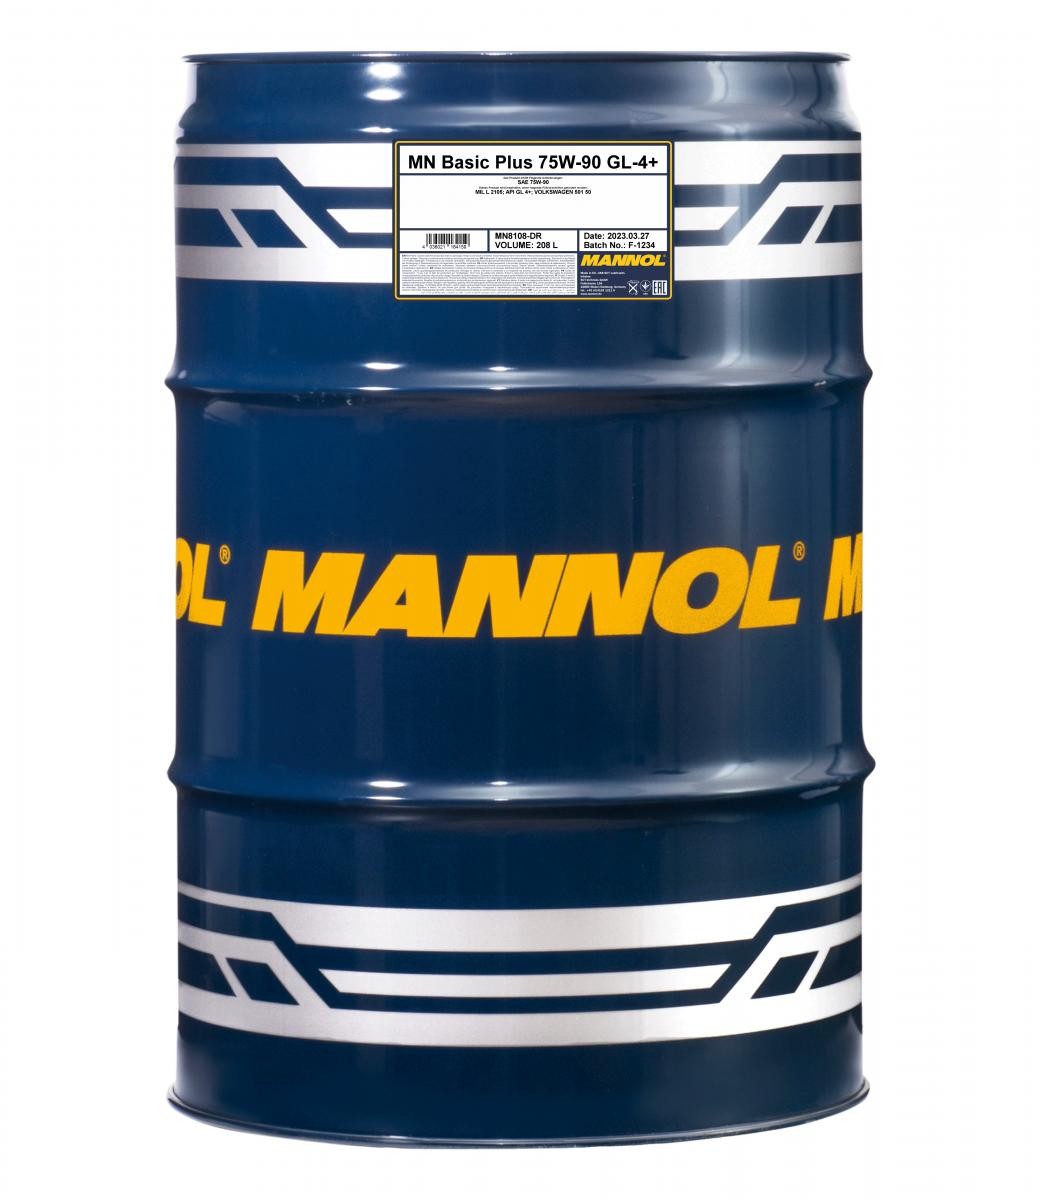 MANNOL Basic Plus GL-4+ 75W-90, Vollsynthetiköl, Inhalt: 208l MIL-L 2105, VW 501 50 Getriebeöl MN8108-DR kaufen